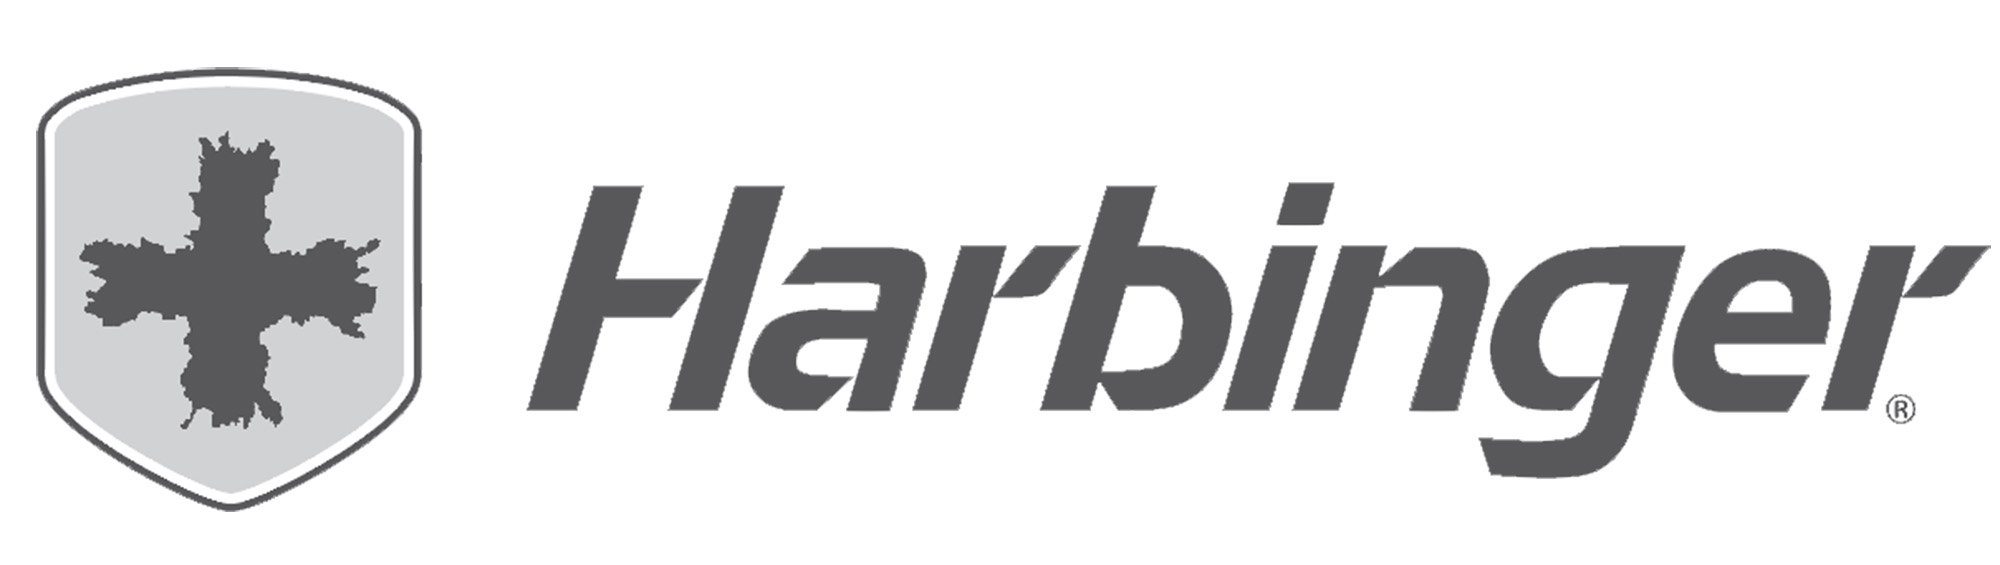 harbinger logo.jpg